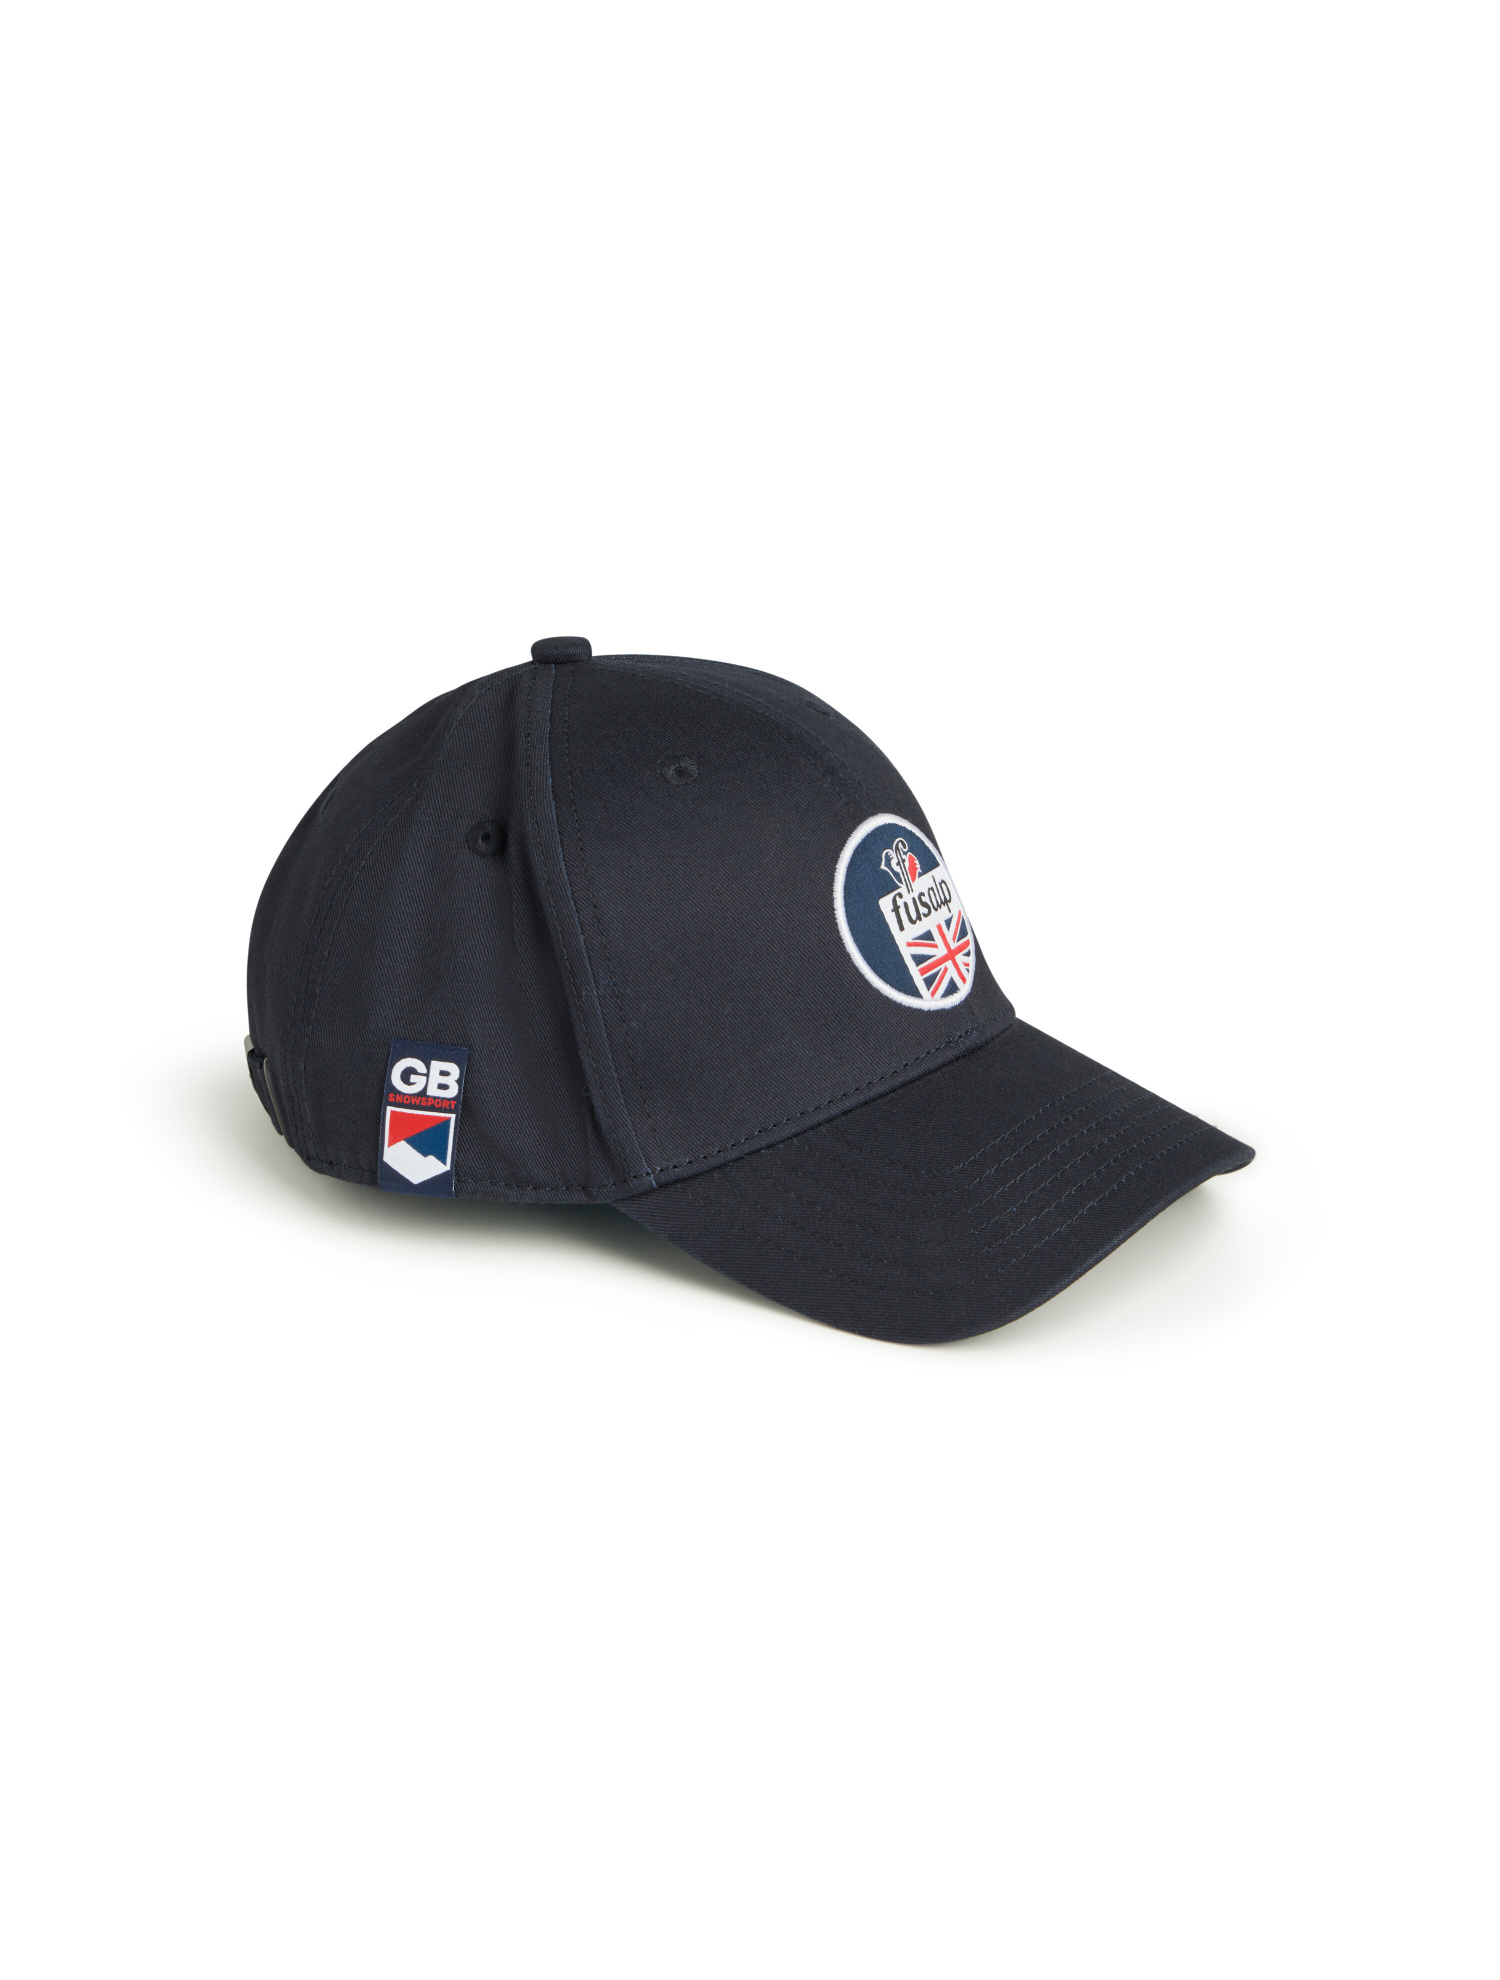 GB TEAM CAP CAP